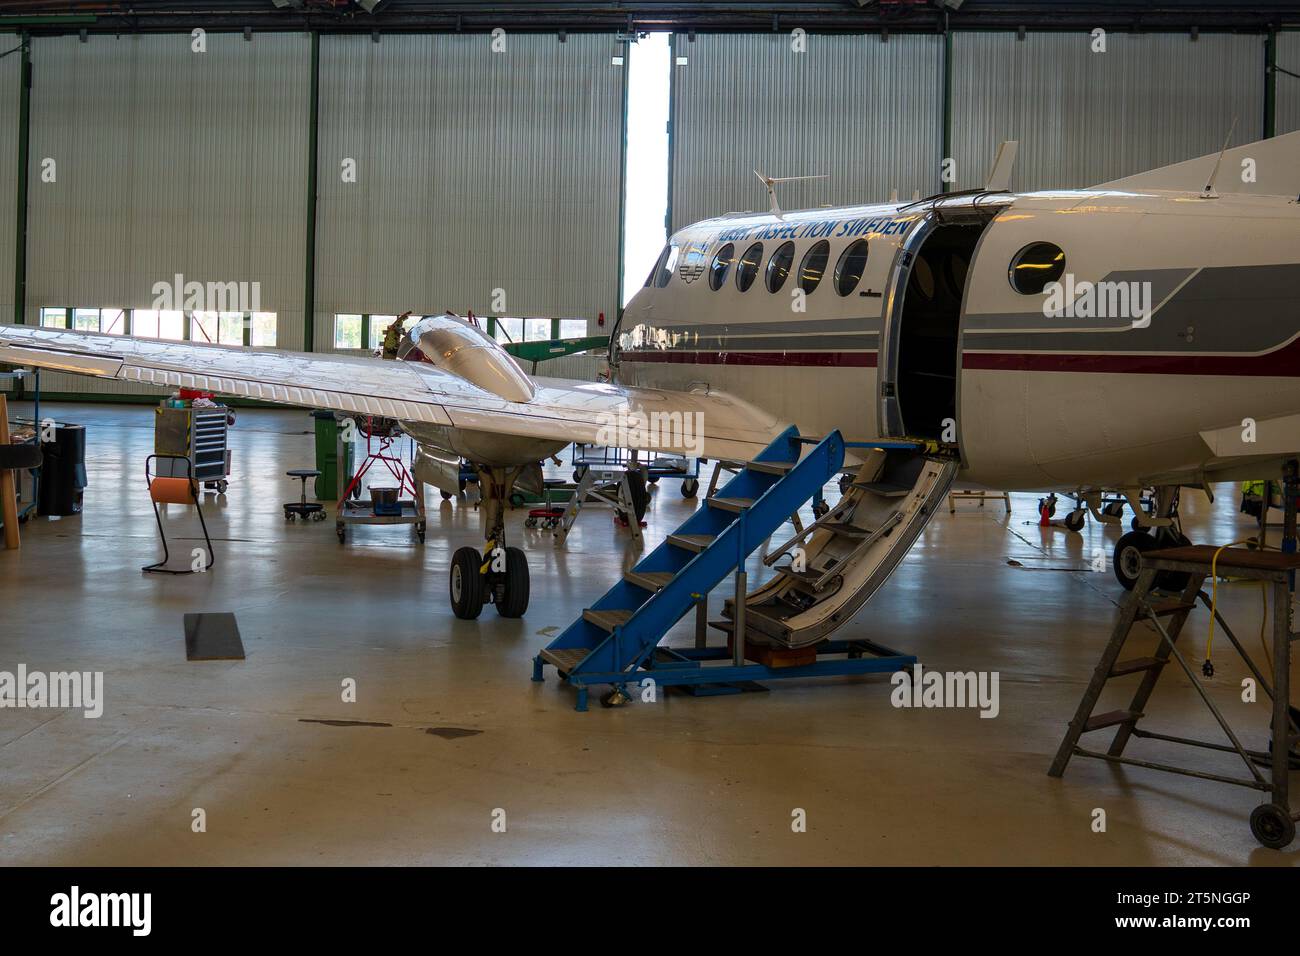 Installation de maintenance pour un petit avion turbopropulsé, jet privé, intérieur, travaux en cours. Jet d'affaires, aviation générale Banque D'Images